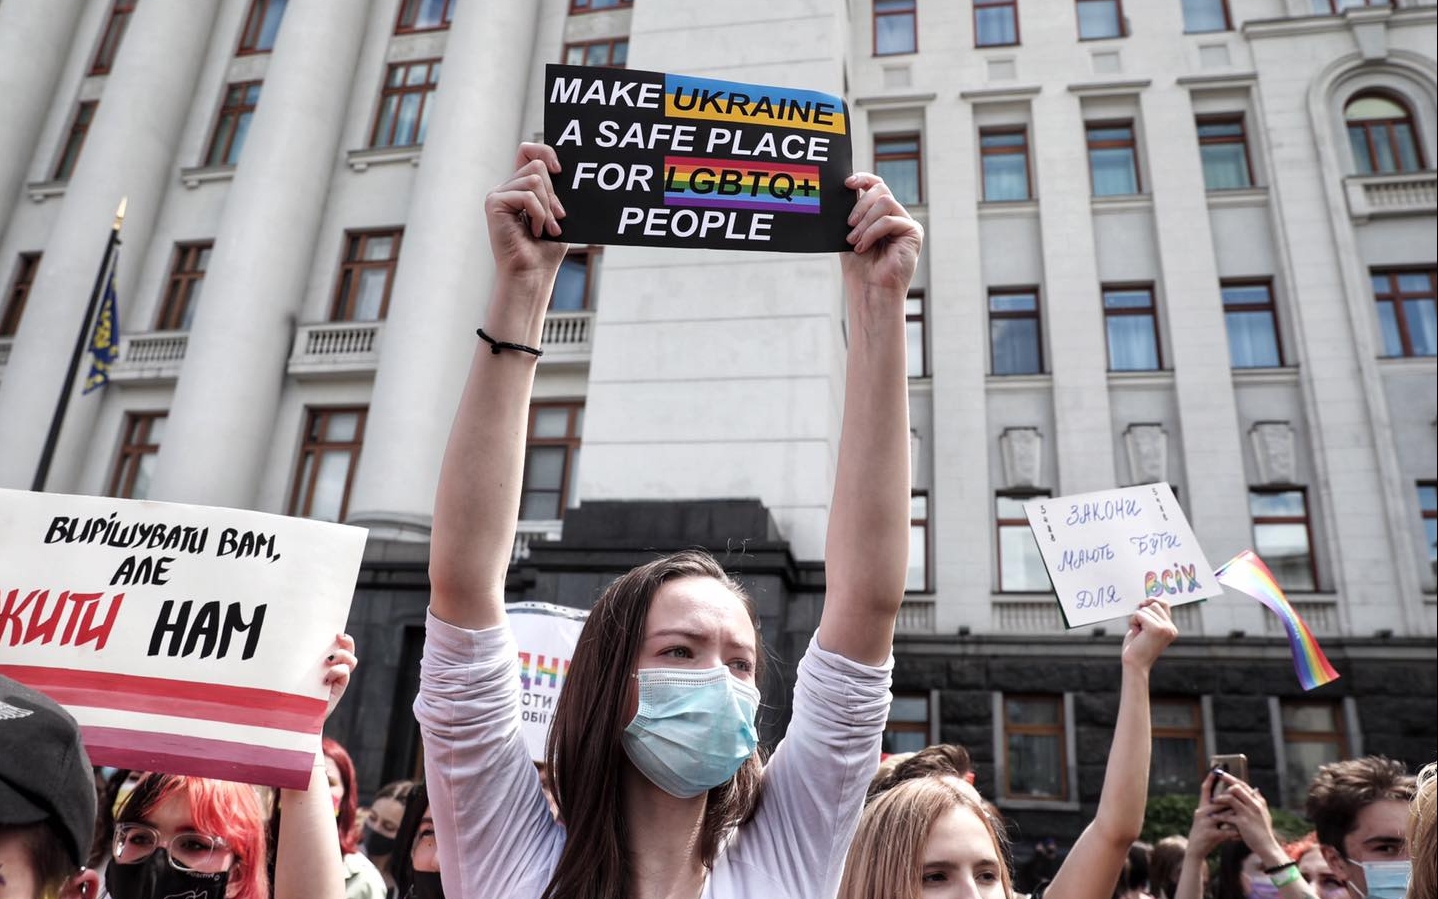 ПриватБанк став на захист прав ЛГБТ+ в Україні - випустив веселкові карти